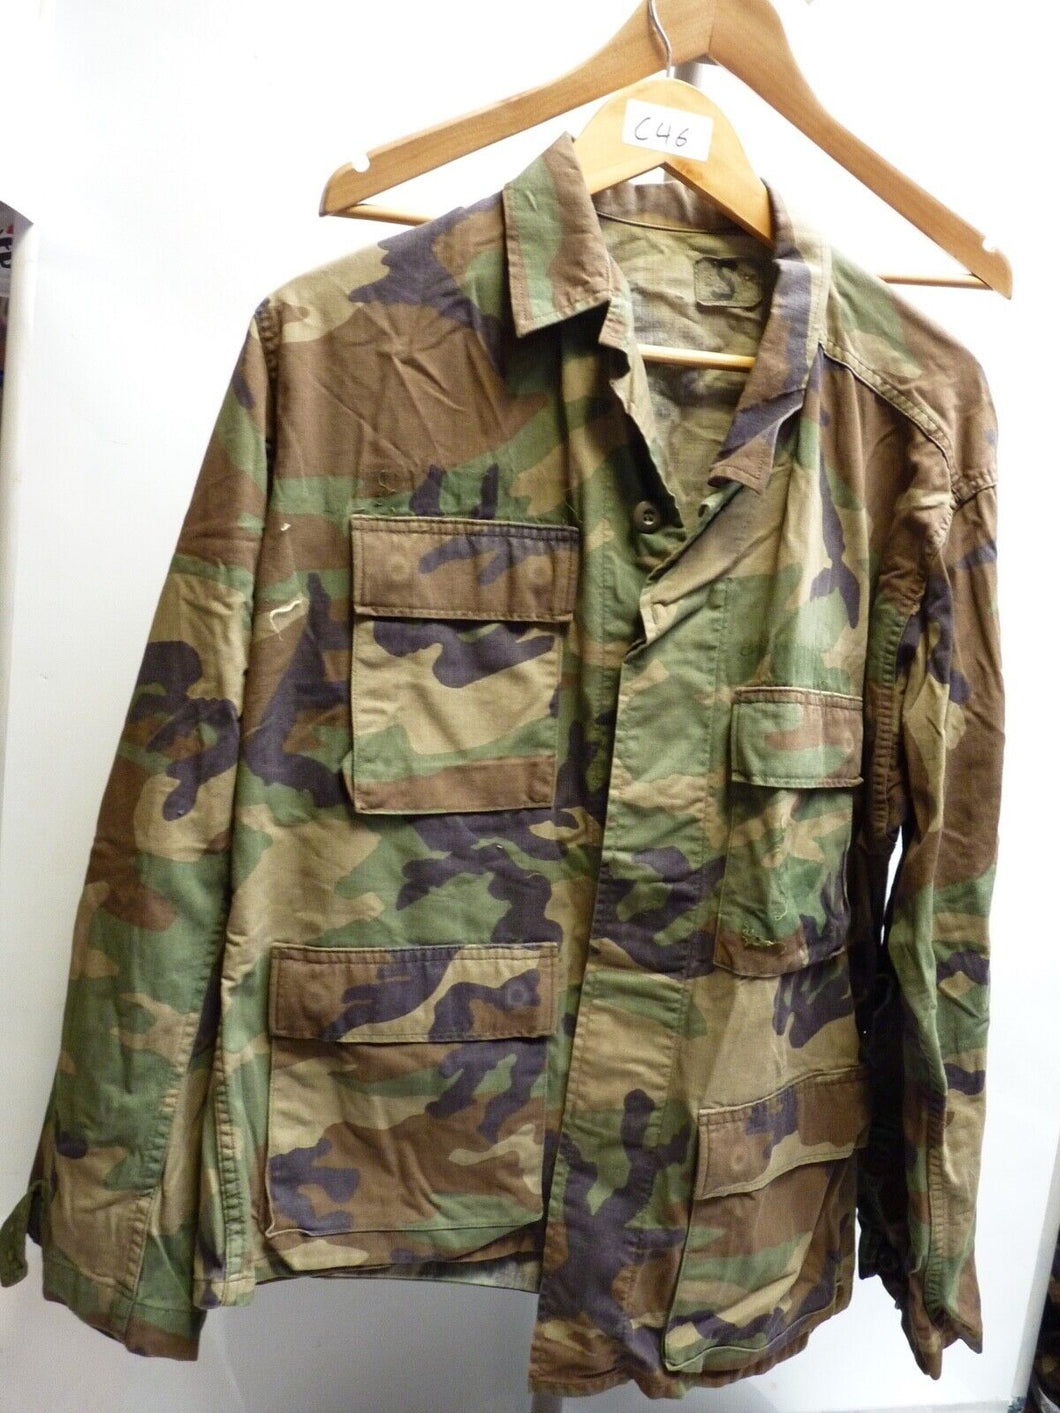 Genuine US Airforce Camouflaged BDU Battledress Uniform - 37 to 41 Inch Chest